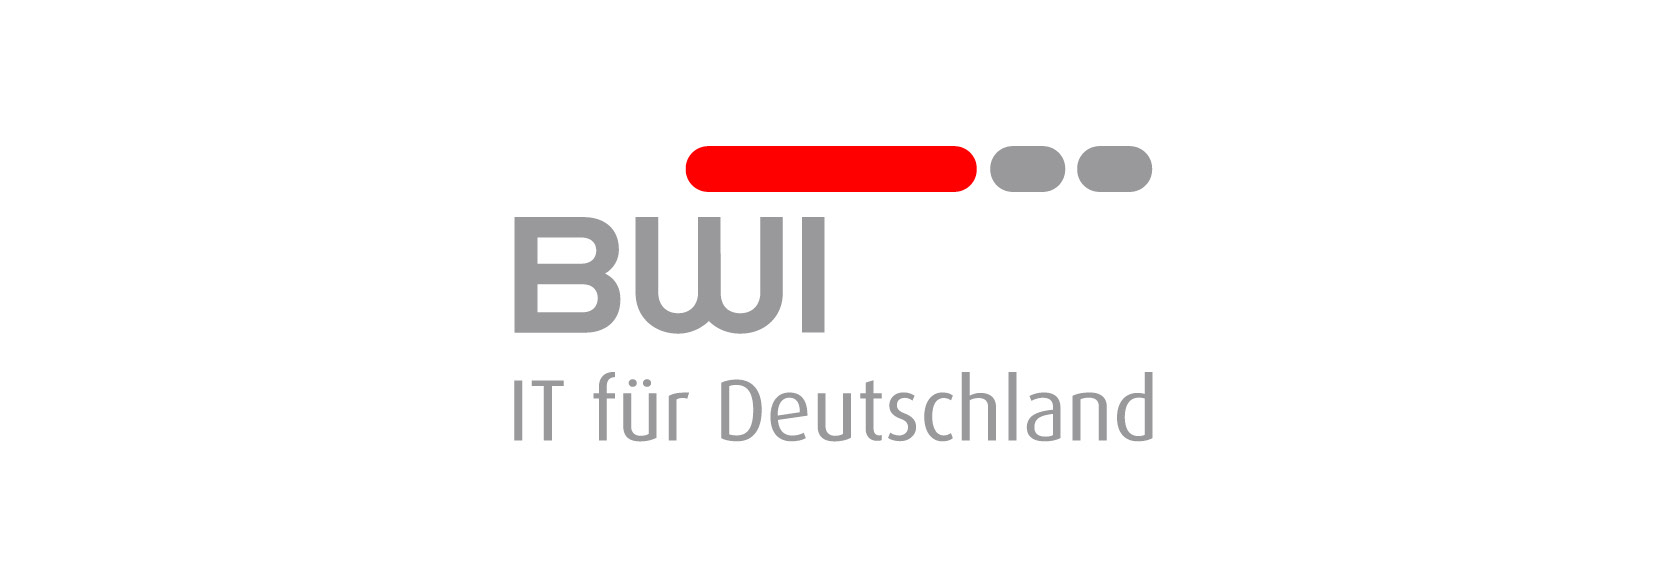 BWI Logo - IT für Deutschland